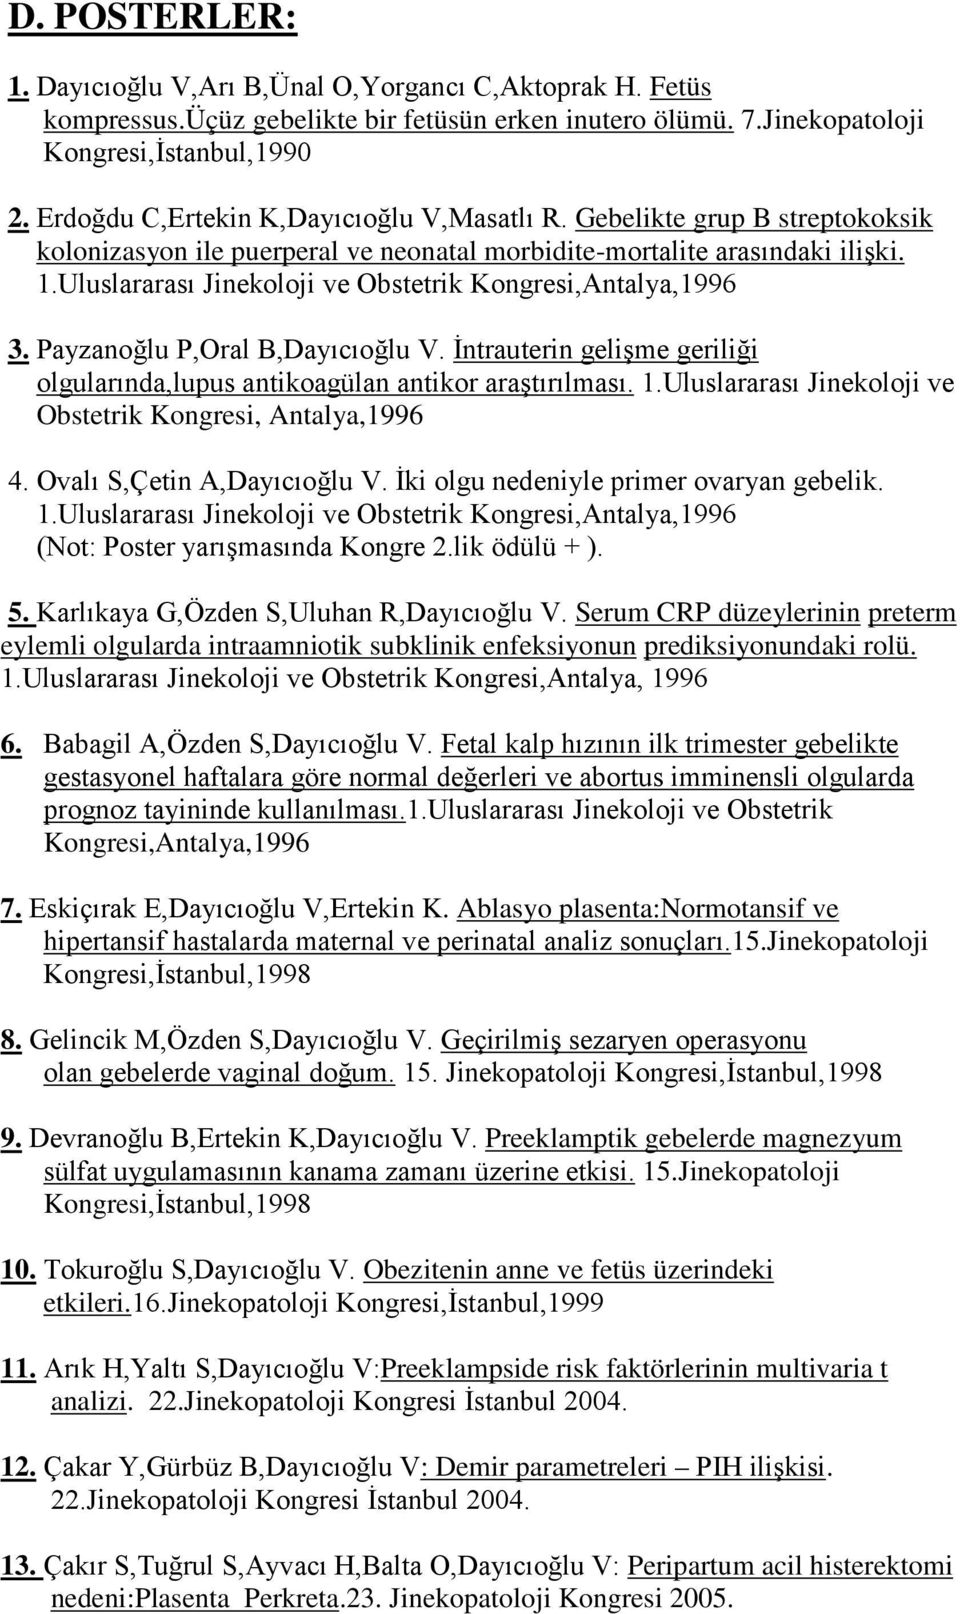 Uluslararası Jinekoloji ve Obstetrik Kongresi,Antalya,1996 3. Payzanoğlu P,Oral B,Dayıcıoğlu V. İntrauterin gelişme geriliği olgularında,lupus antikoagülan antikor araştırılması. 1.